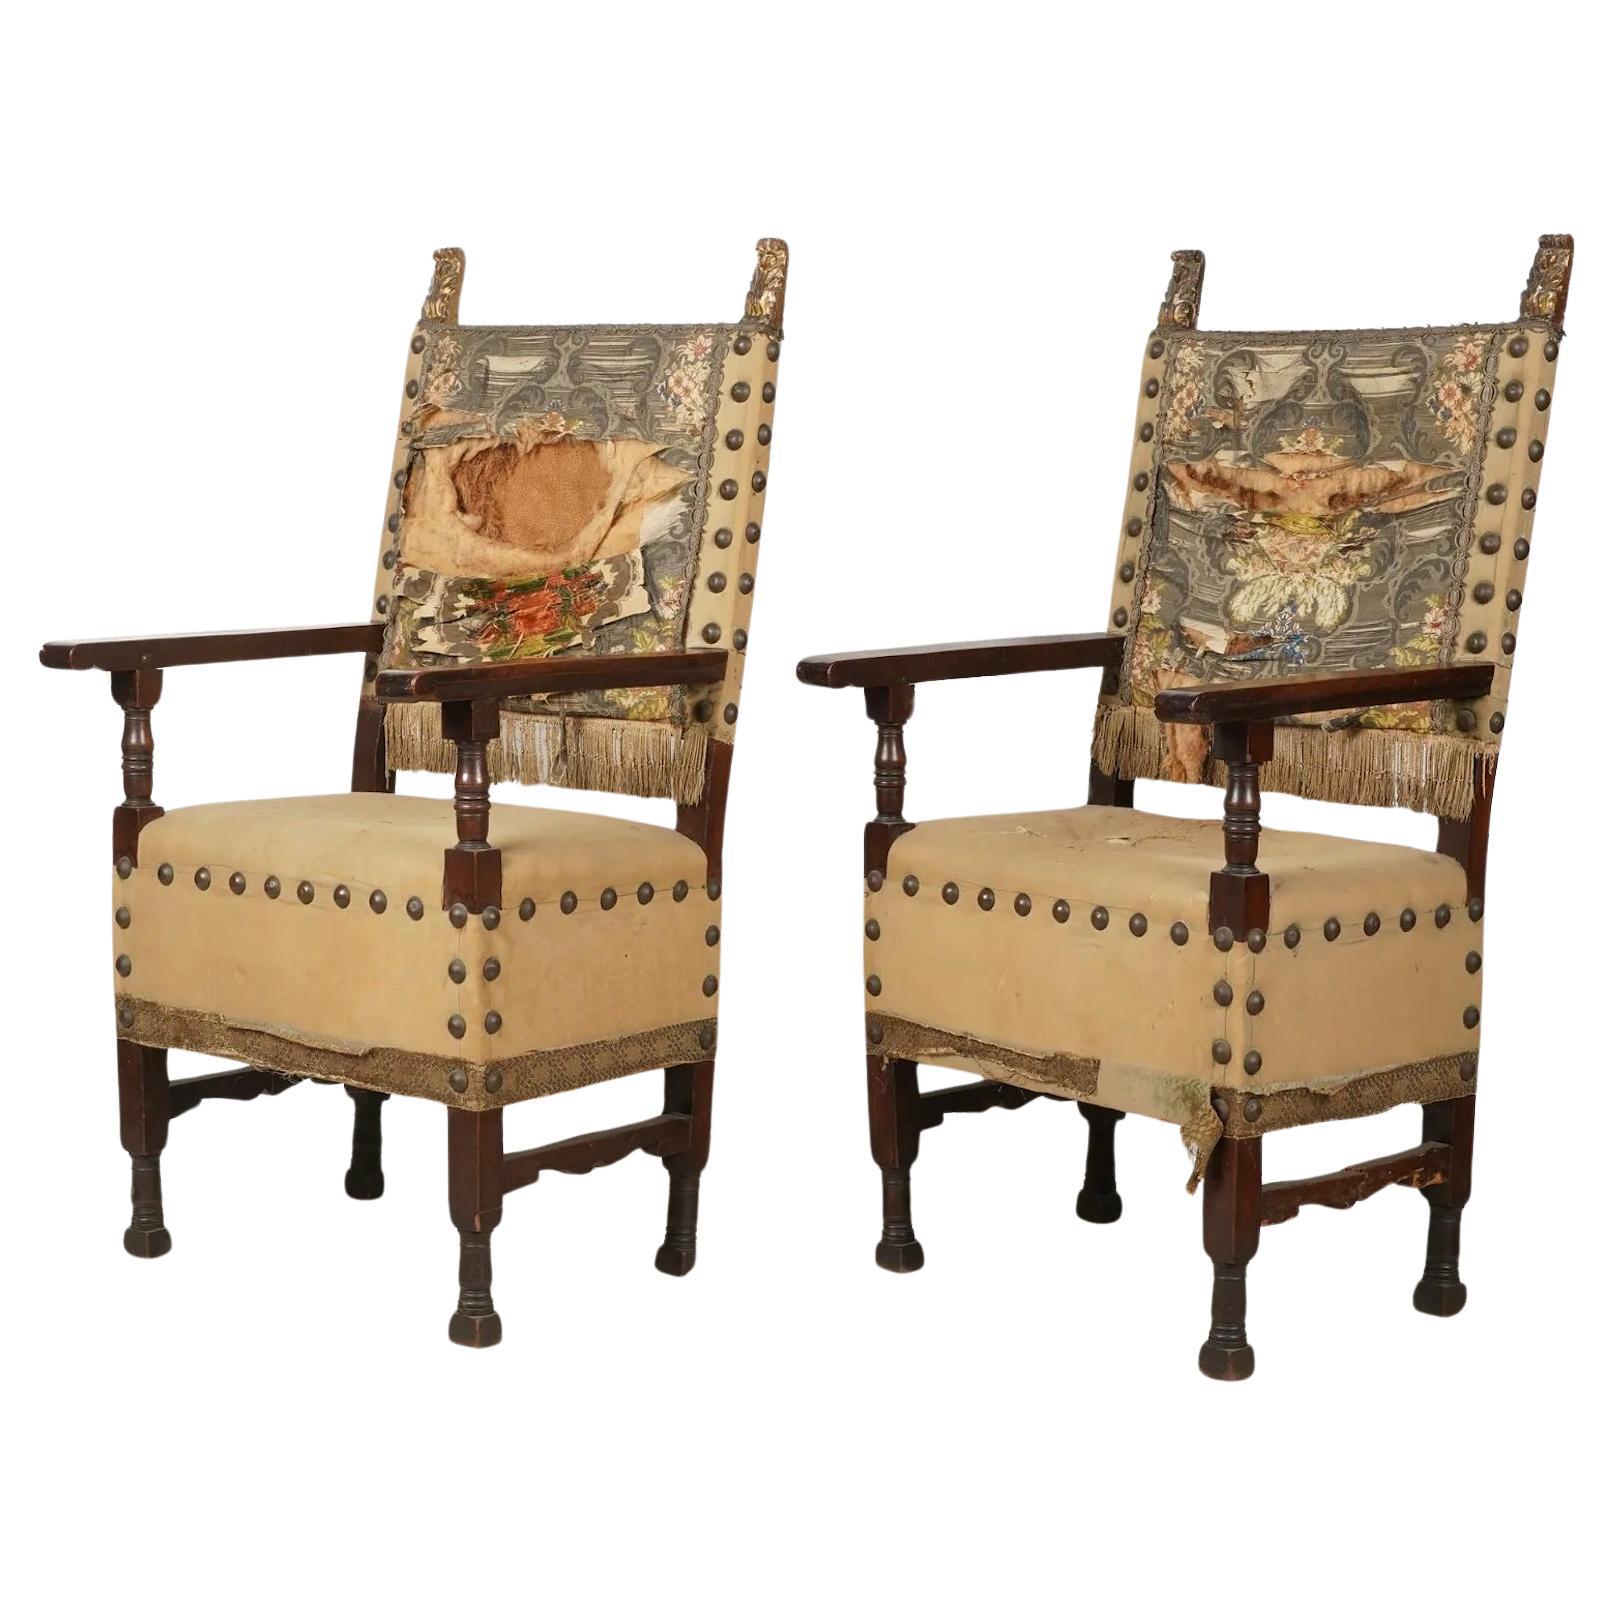 Antique Paire de chaises de salle en noyer Spanish Baroque Colonial Revival 18ème siècle 